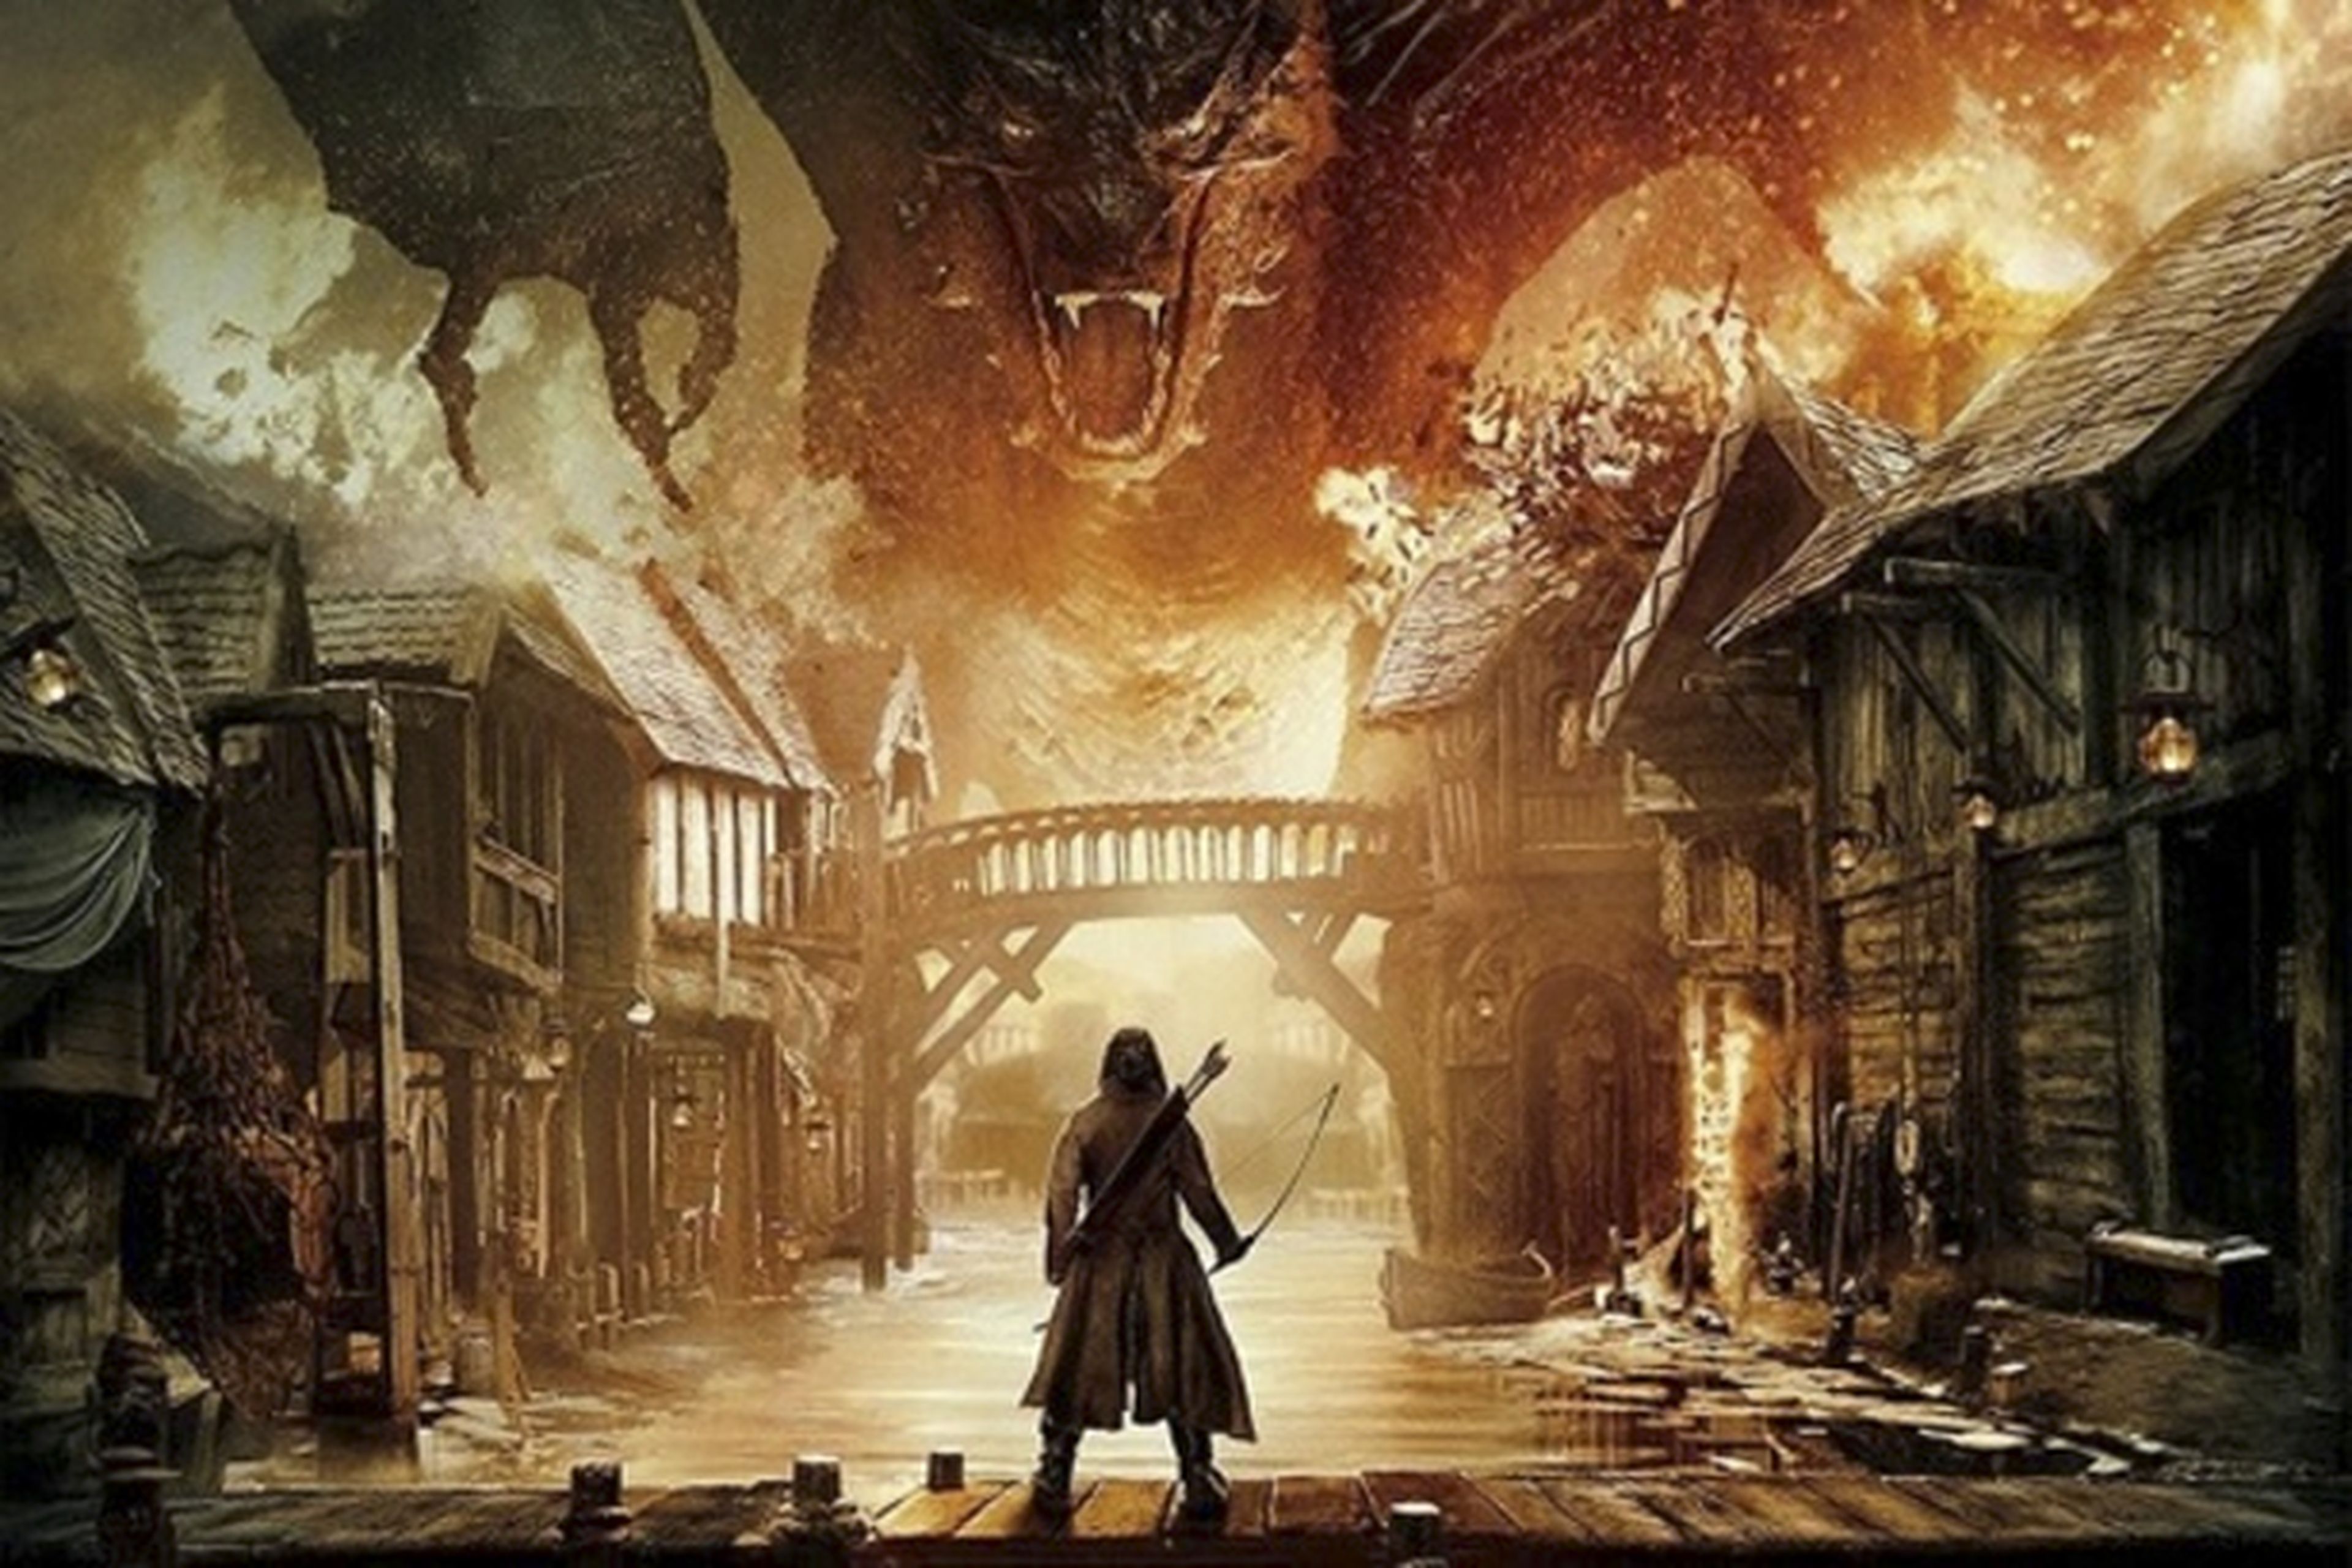 Espectacular tráiler de El hobbit: la batalla de los cinco ejércitos